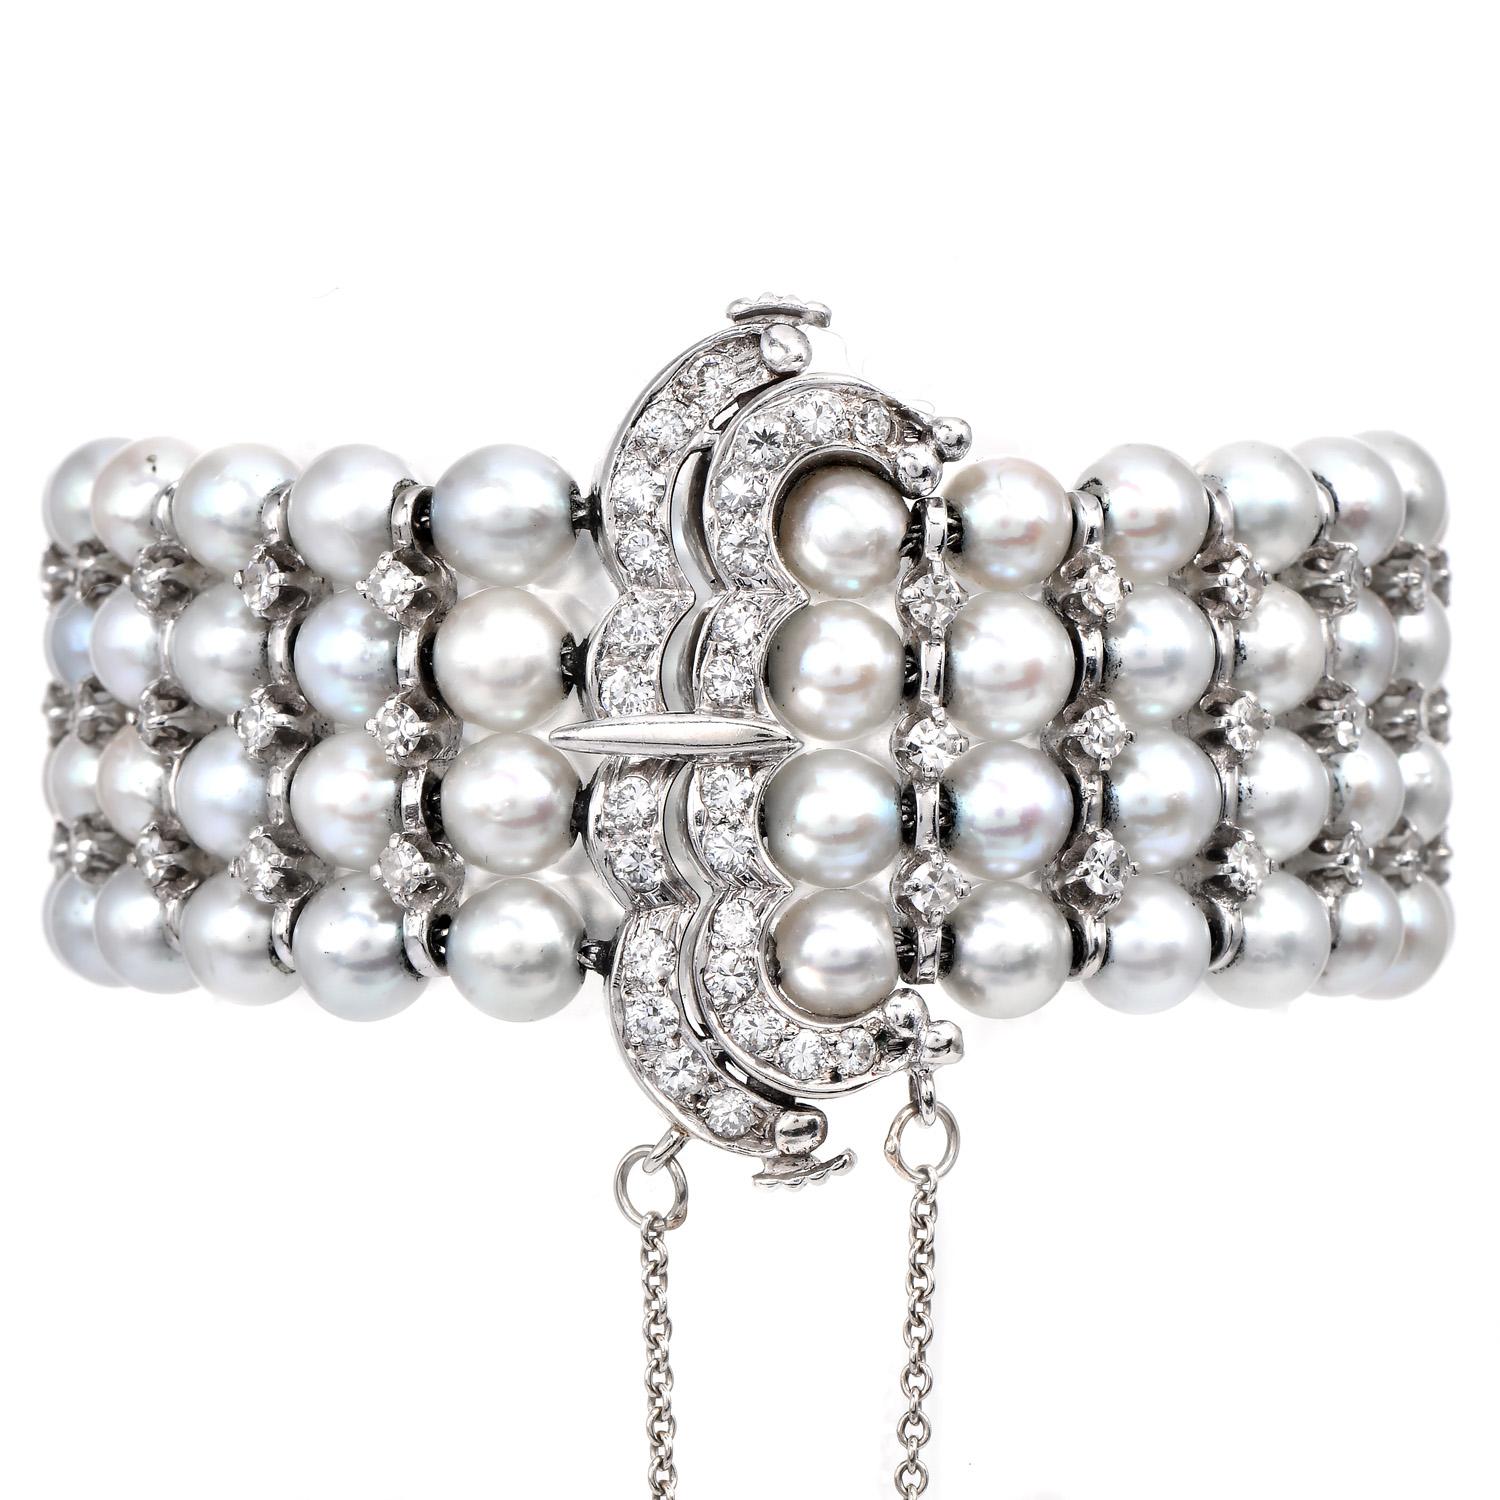 Vintage Genuine Akoya pear wrap-around Bracelet mit diamantbesetztem Gürtelverschluss. Es ist mit schimmernden echten Perlen in zarten Rosa-, Creme- und Blautönen geschmückt. Gekonnt in vier Stränge gegliedert.

Die mit natürlichen Diamanten im